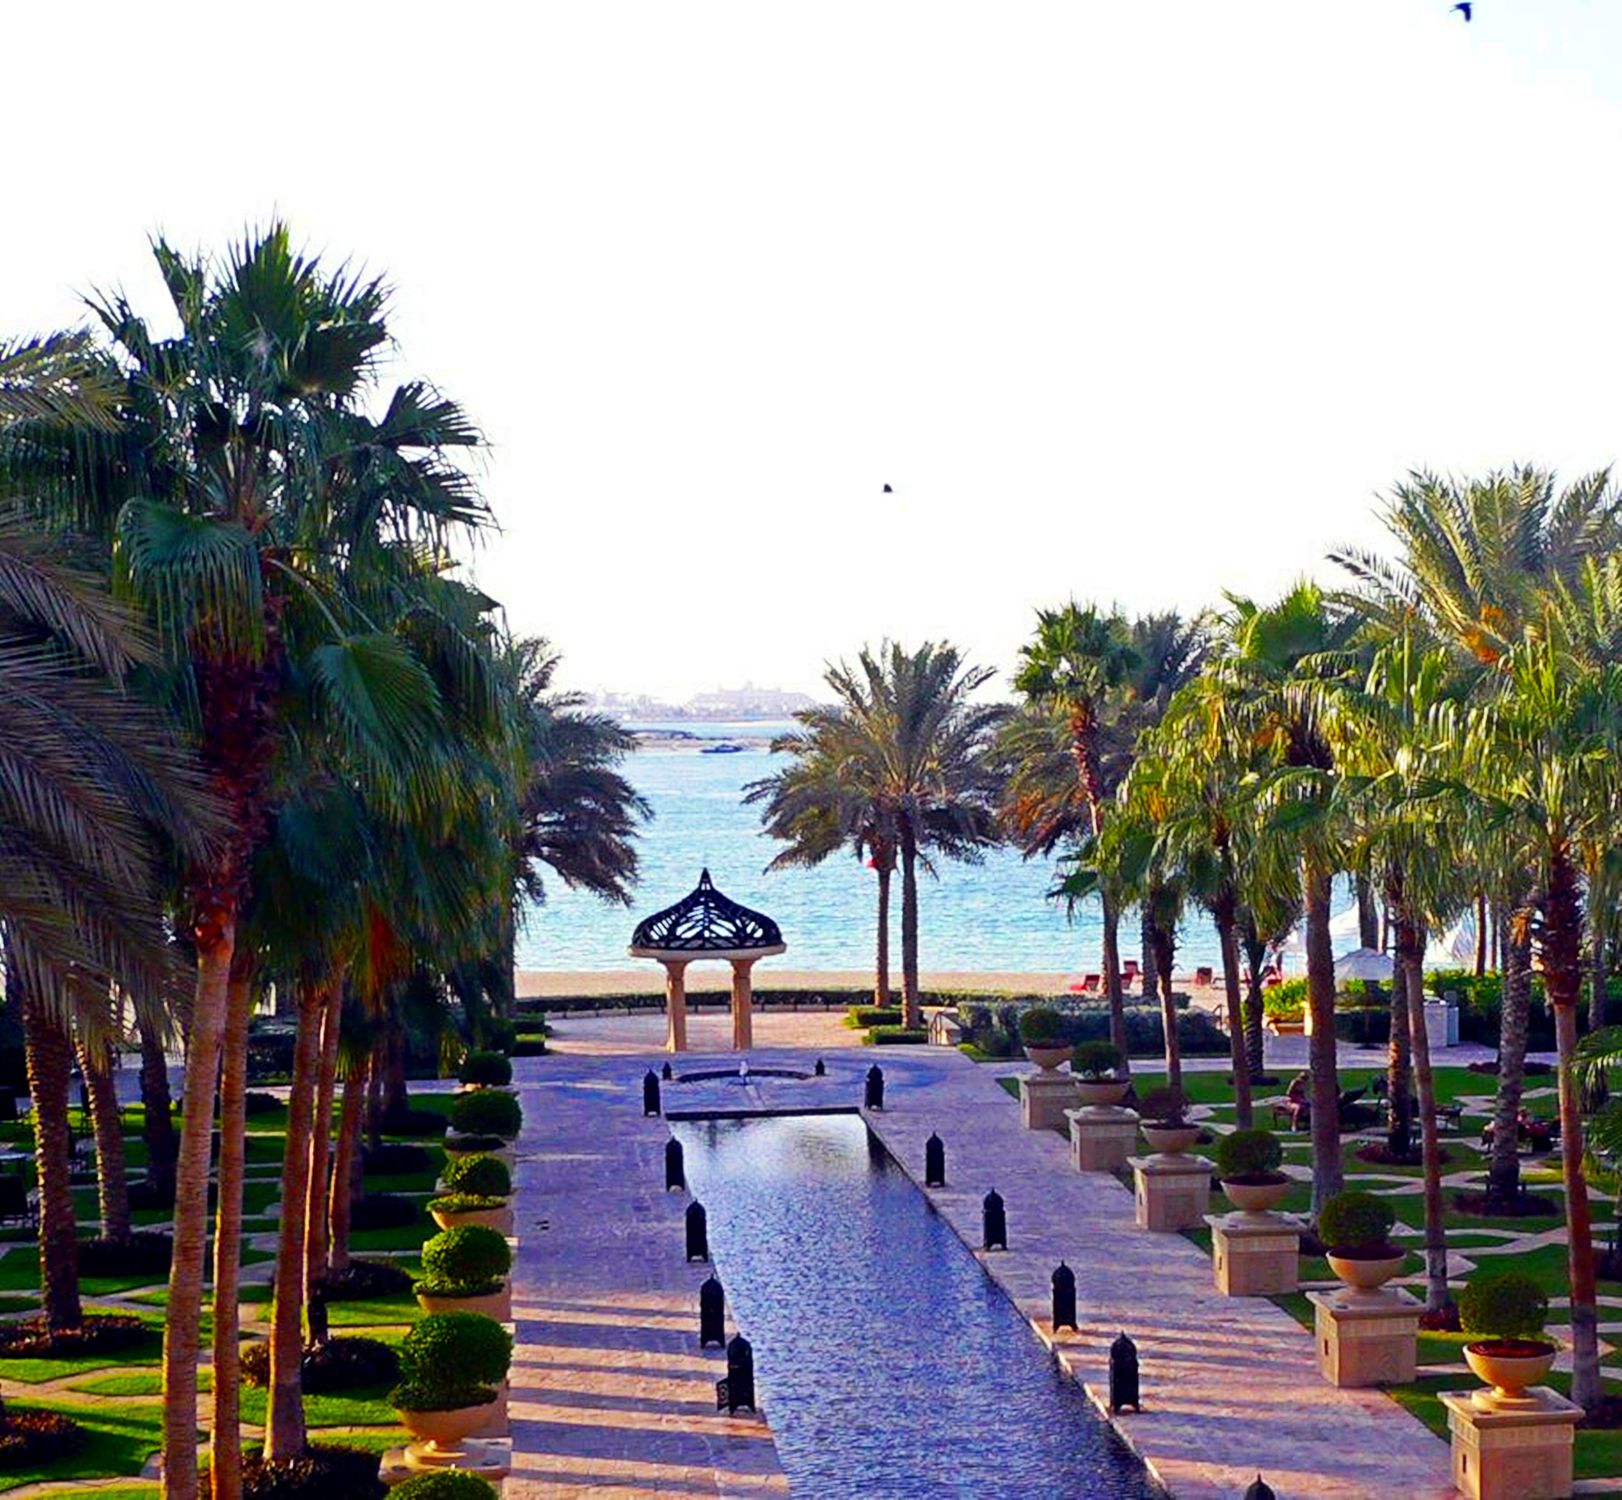 Bild mit Urlaub, Palmen, Sommer, Wege, Strand, Meer, Weg, Palme, Am Meer, Häuschen, Dubai, zum Strand